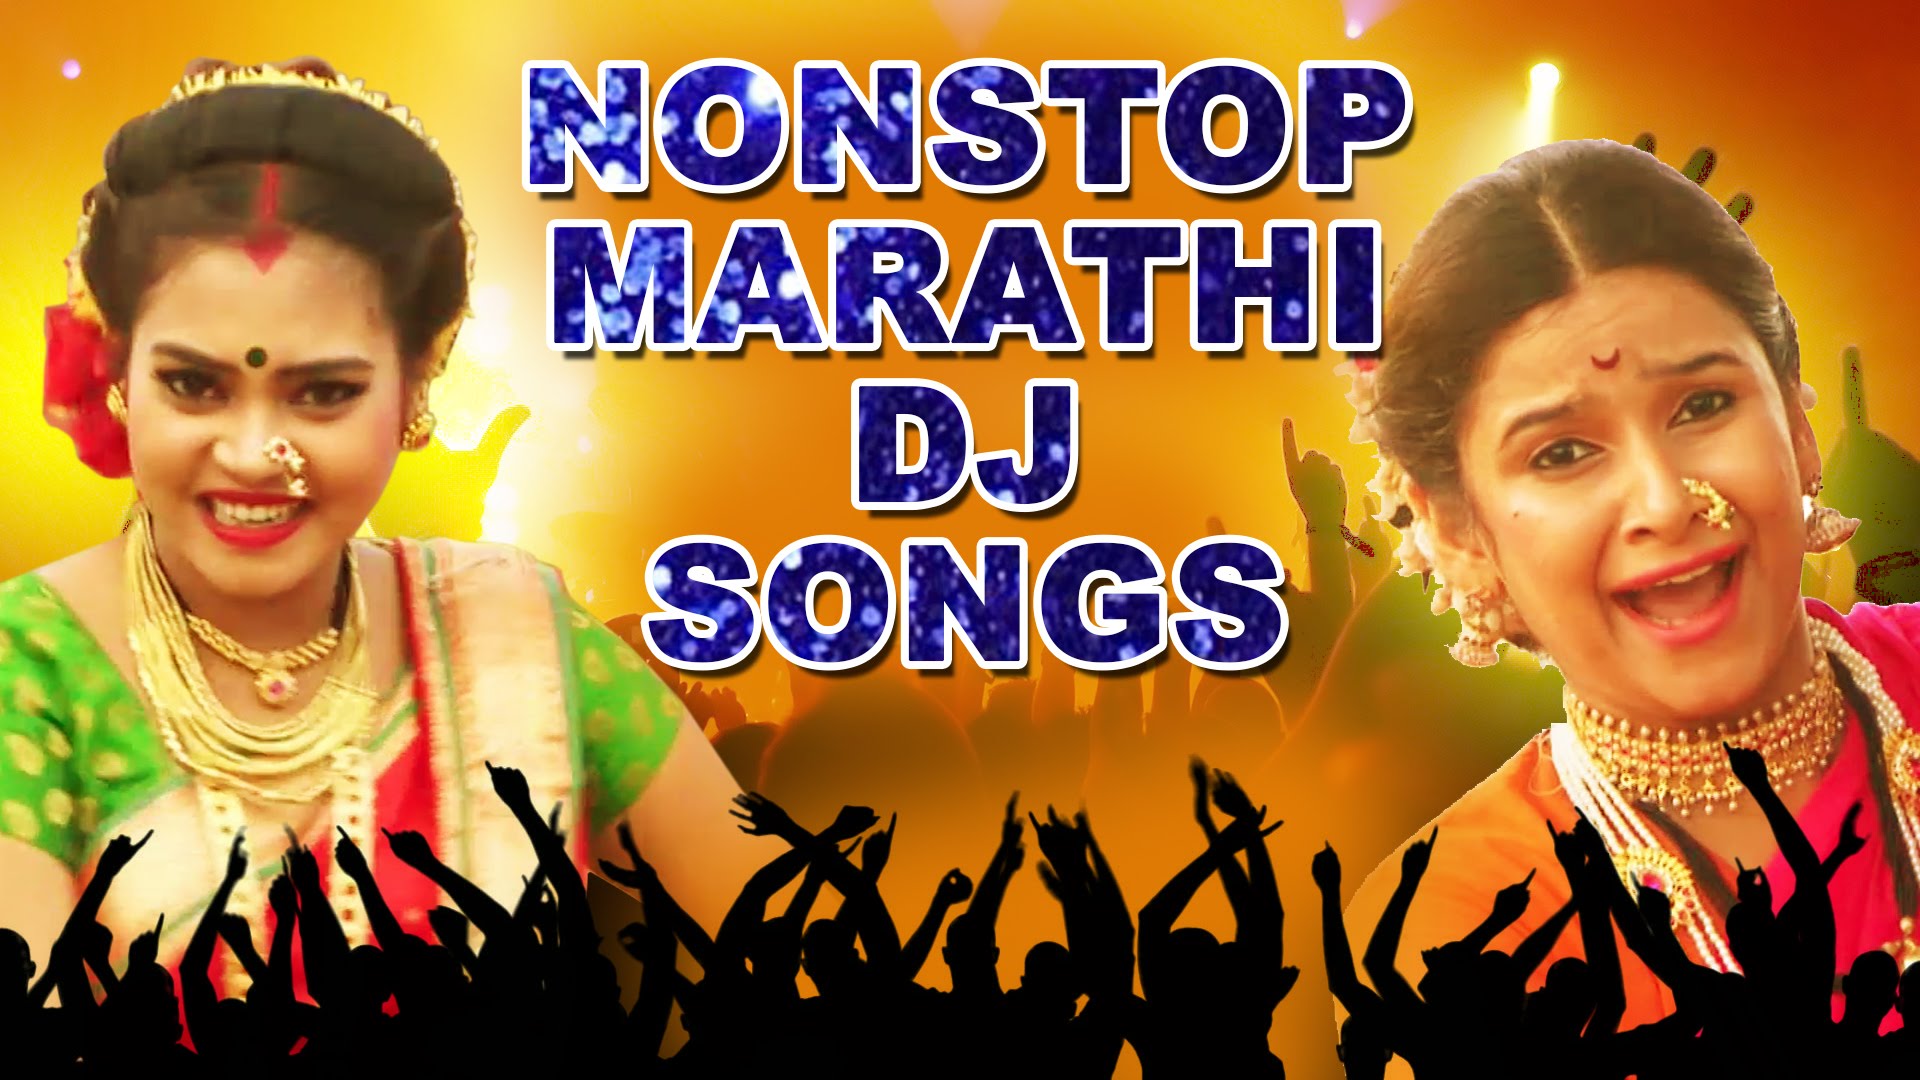 marathi holi filmi songs mp3 vipmarathi